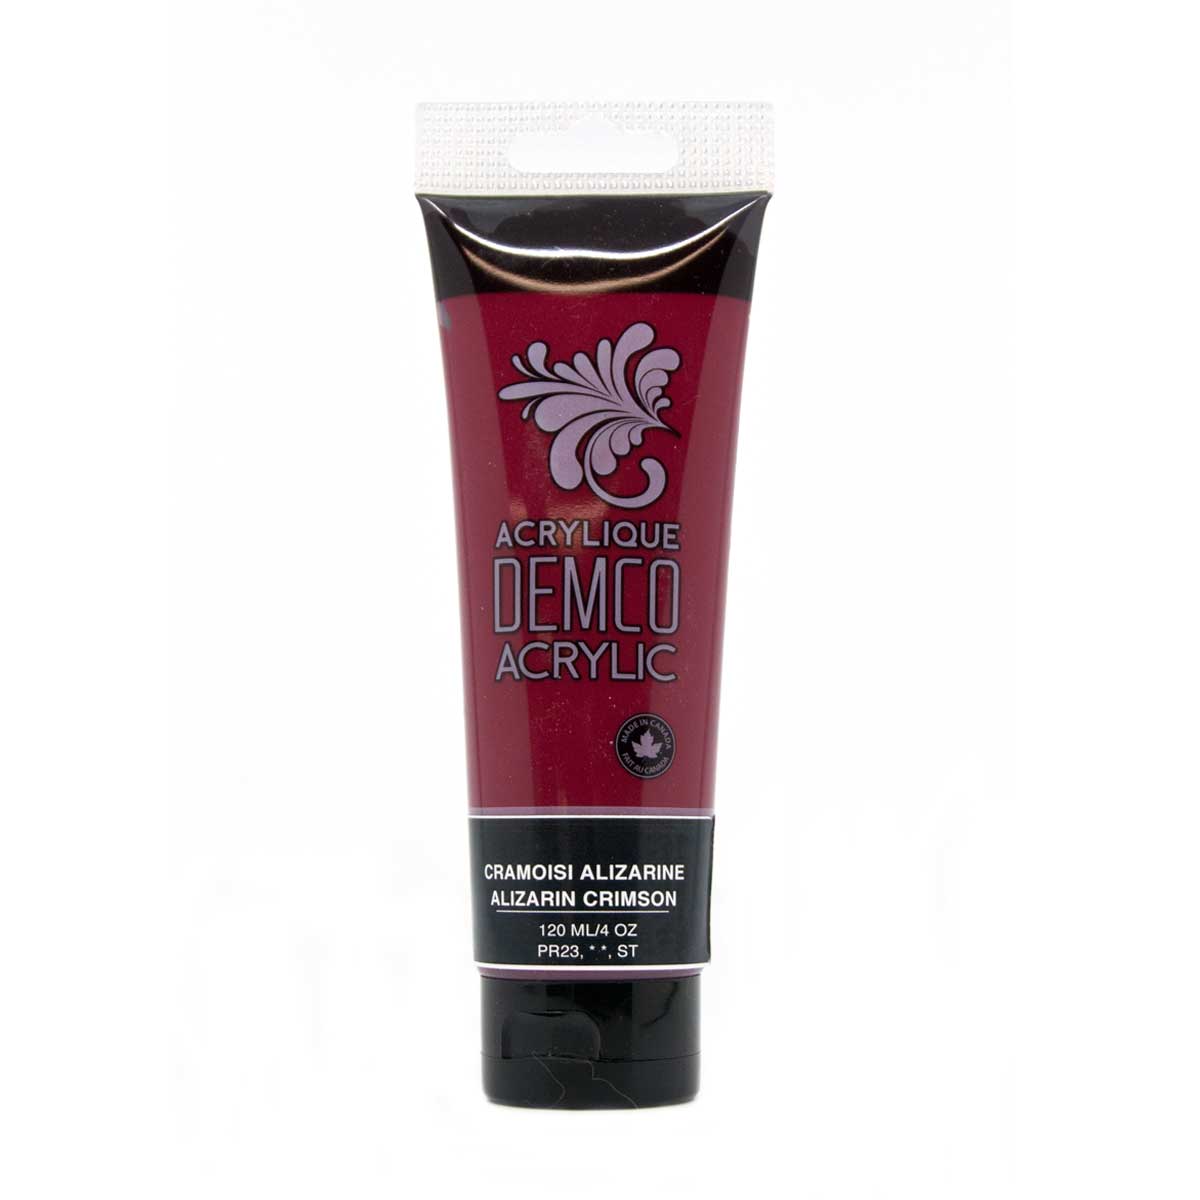 Demco Acrylic Alizarin Crimson 120ml/4oz